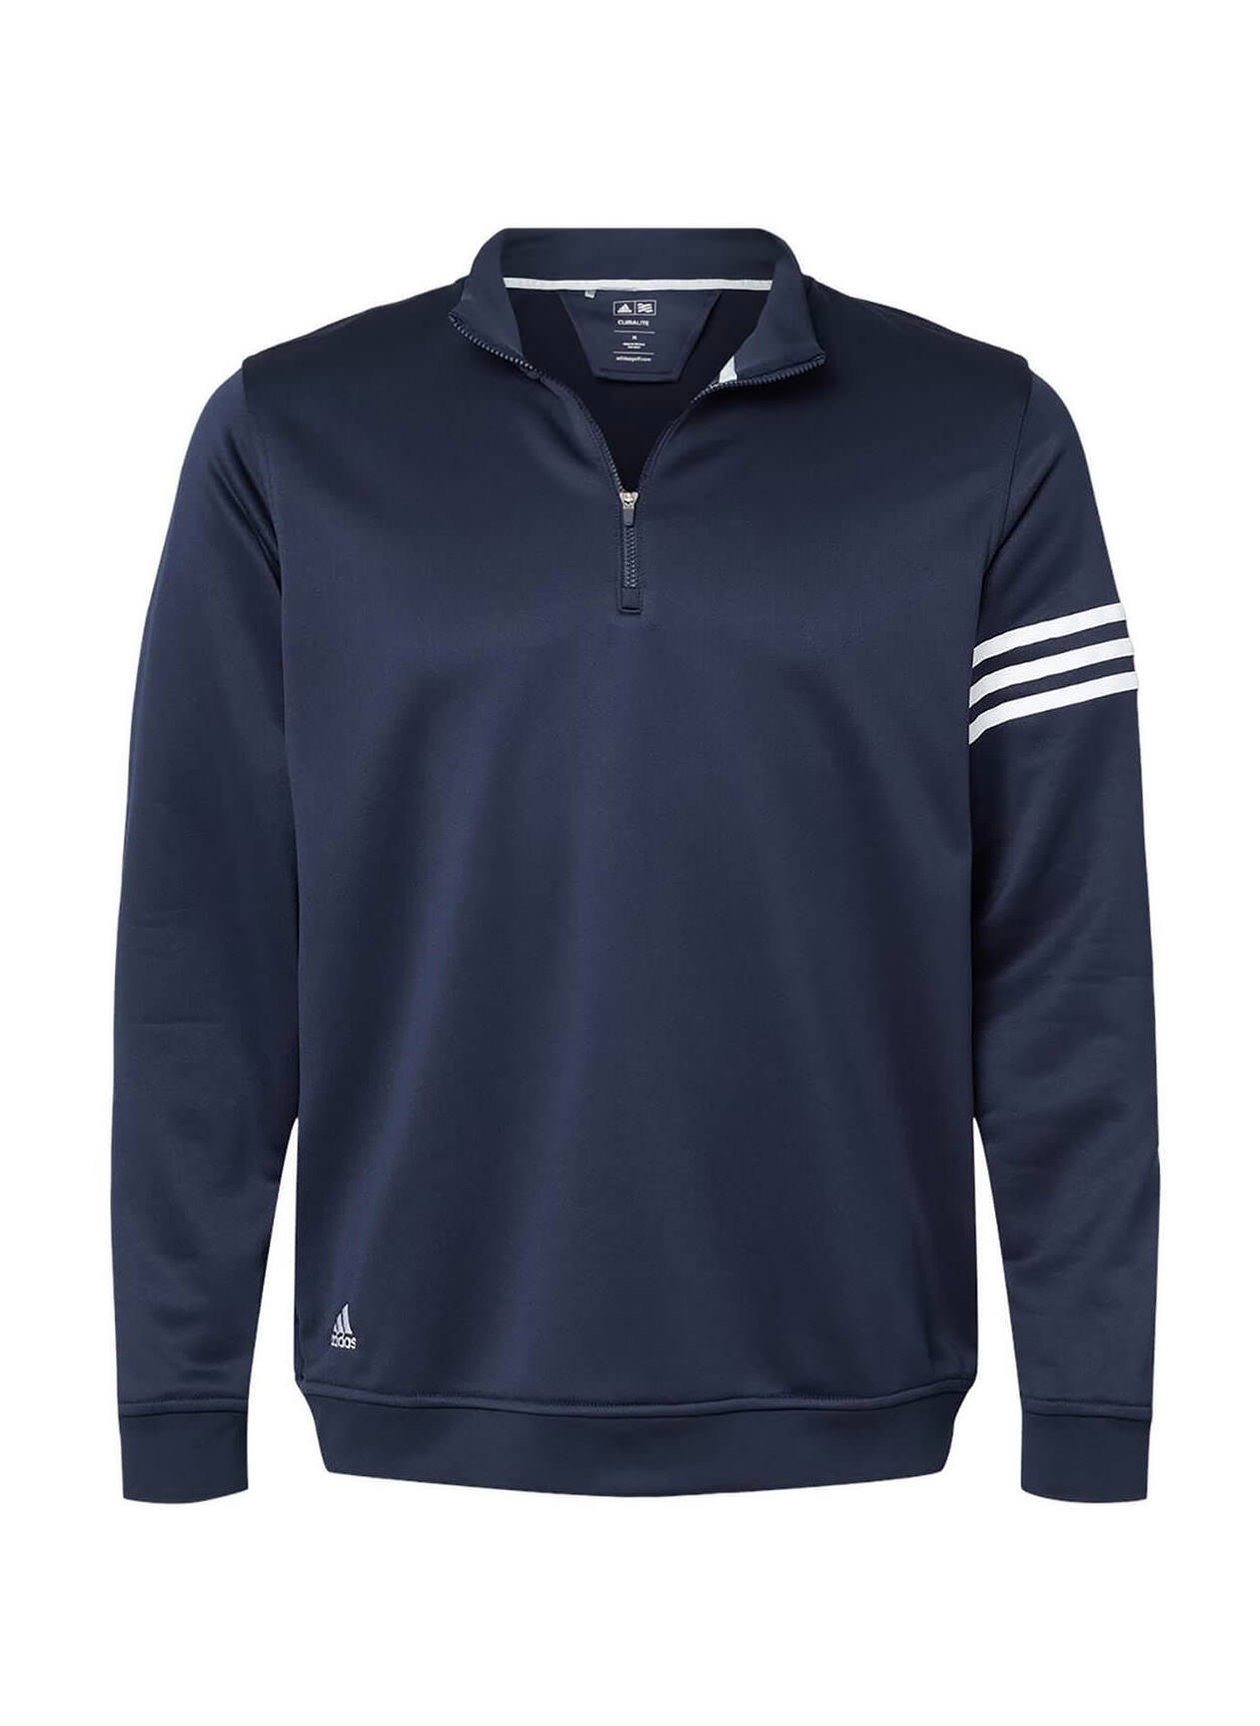 Adidas 3-Stripes French Terry Quarter-Zip Men's Navy / White